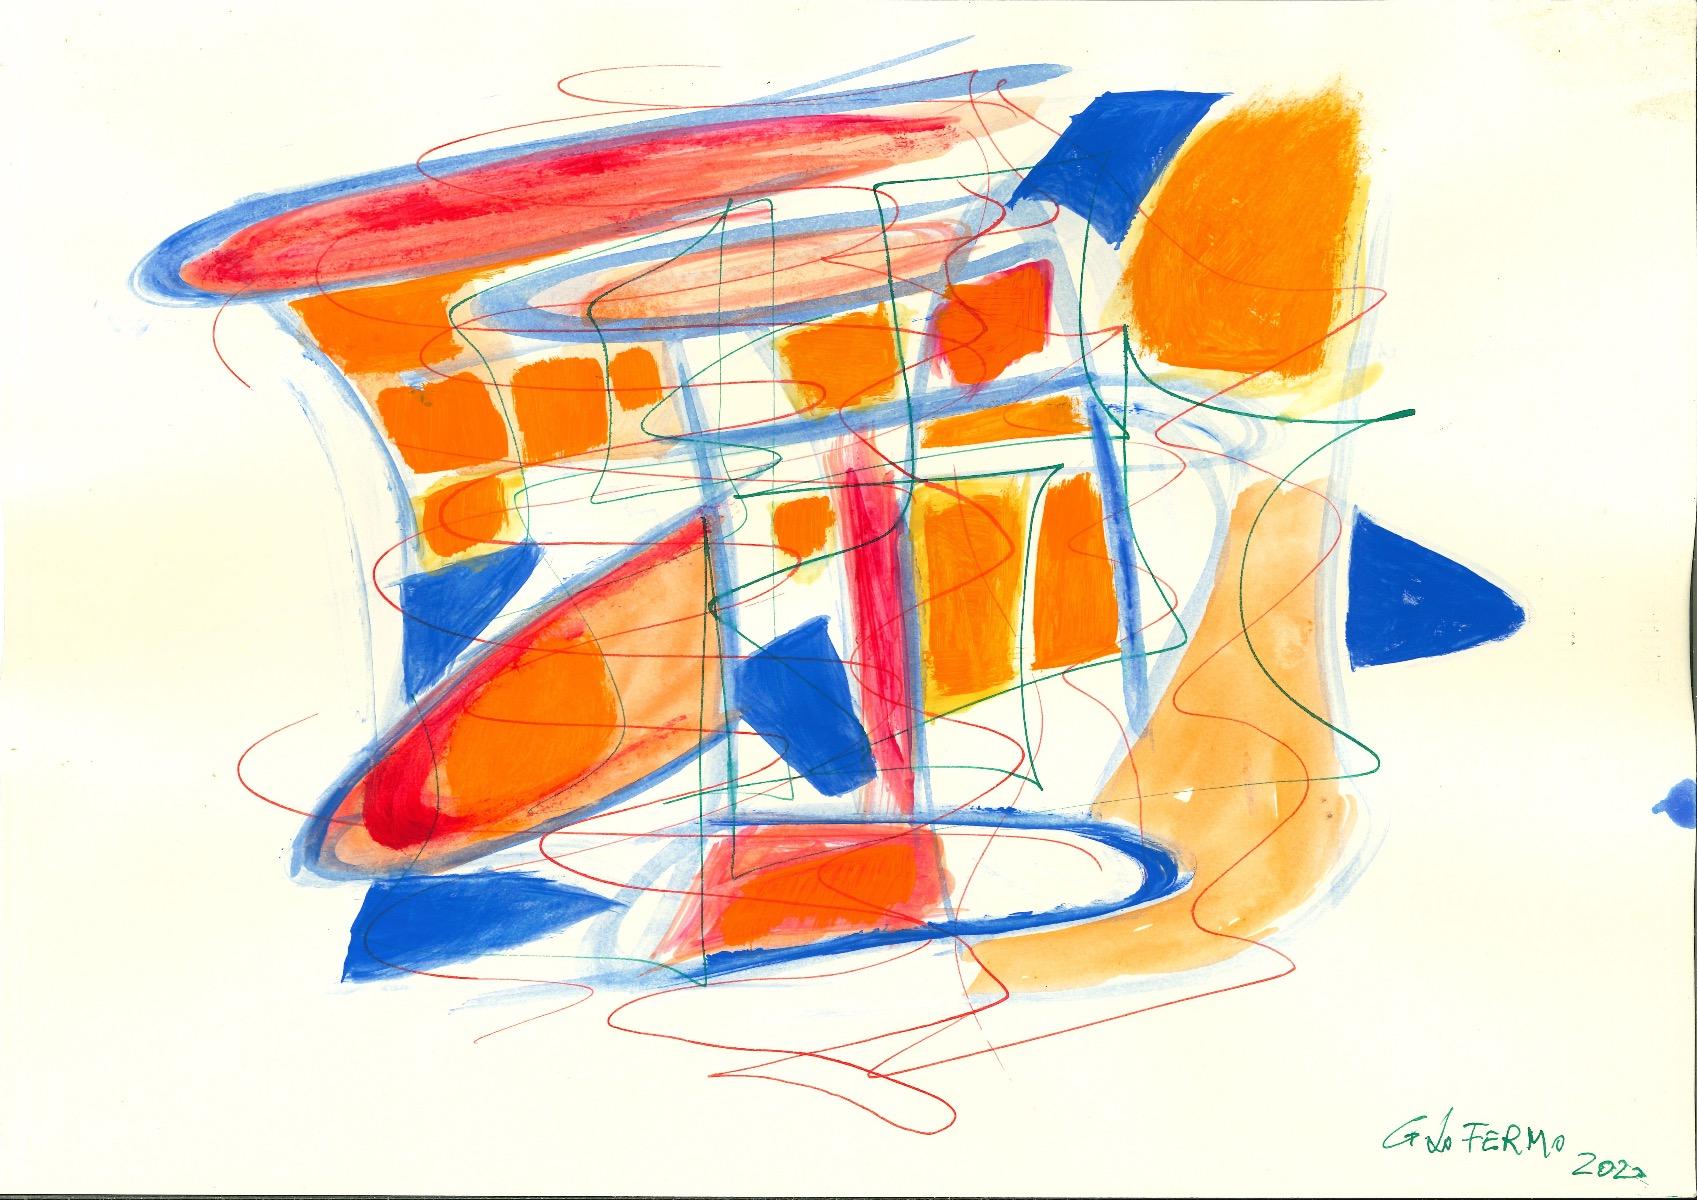 Mixed Colors Composition ist ein Originalkunstwerk von Giorgio Lo Fermo (geb. 1947) aus dem Jahr 2020.

Mischtechnik in Tempera und Aquarell auf Papier

Handsigniert und datiert vom Künstler unten rechts

Perfekte Bedingungen.

Giorgio Lo Fermo ist